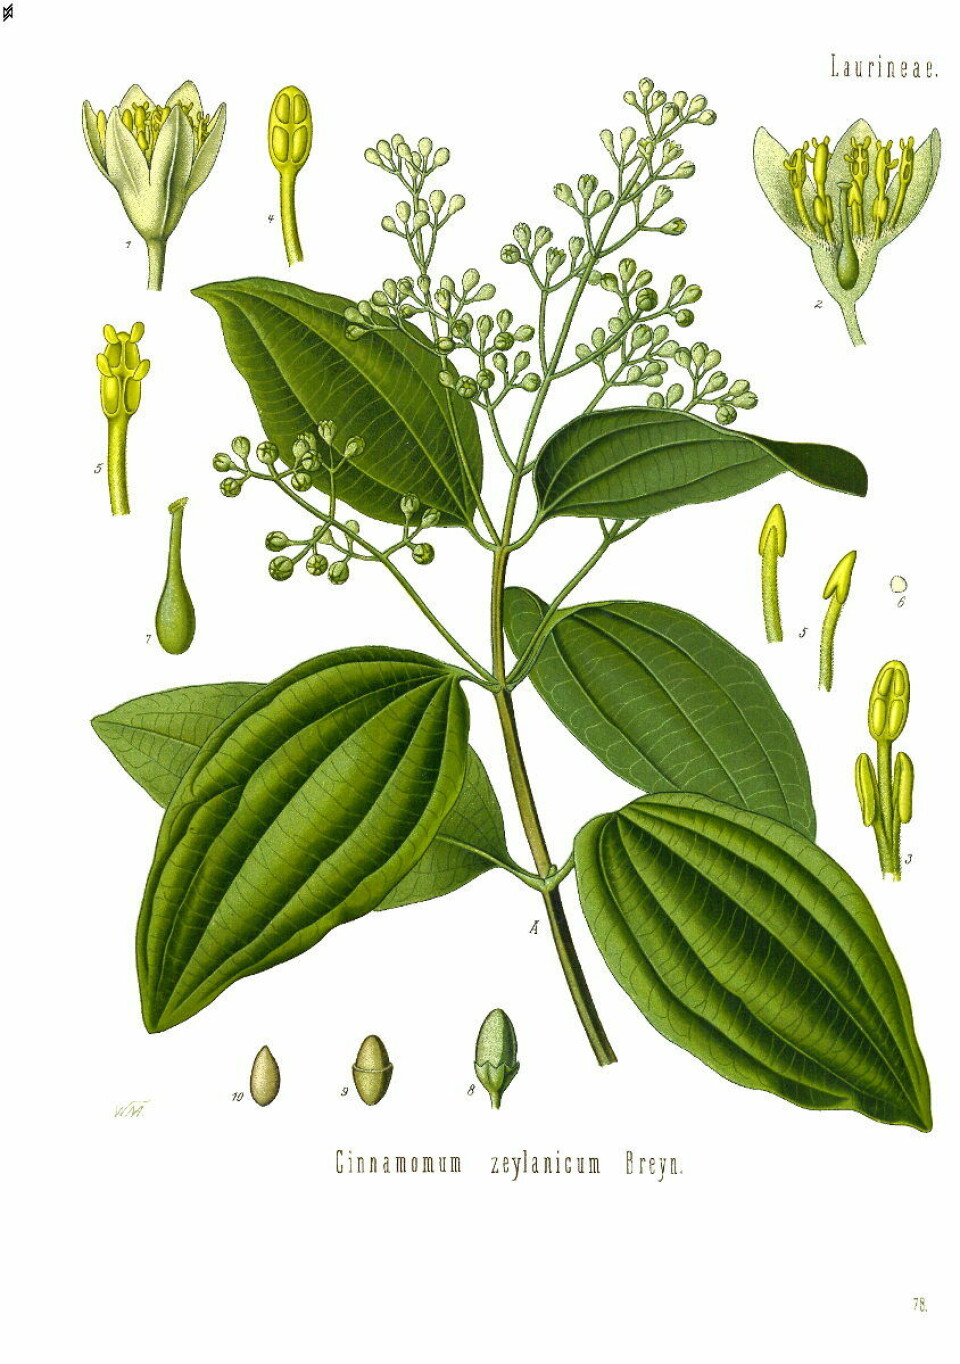 Ceylon-kanel vert hausta frå treet Cinnamomum zeylanicum, eit eviggrønt tre som kan bli 10-15 meter høgt. Det meste av produksjonen føregår framleis på Sri Lanka.